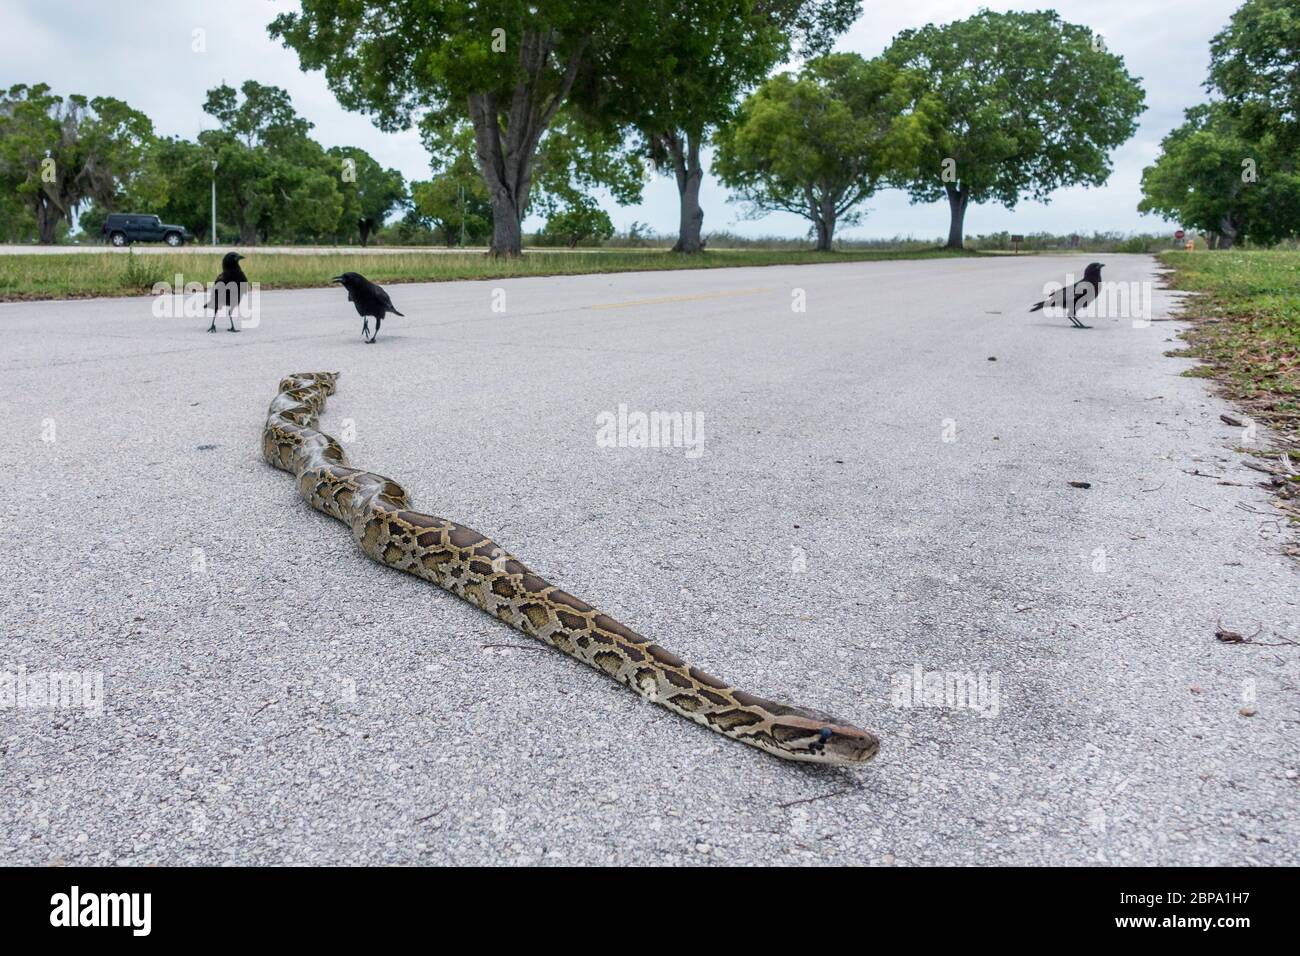 Eine etwa 1,2 m lange birmanische Python wird von Krähen belästigt, wenn sie den Parkplatz am Flamingo Marina, Everglades National Park, Florida, USA überquert Stockfoto